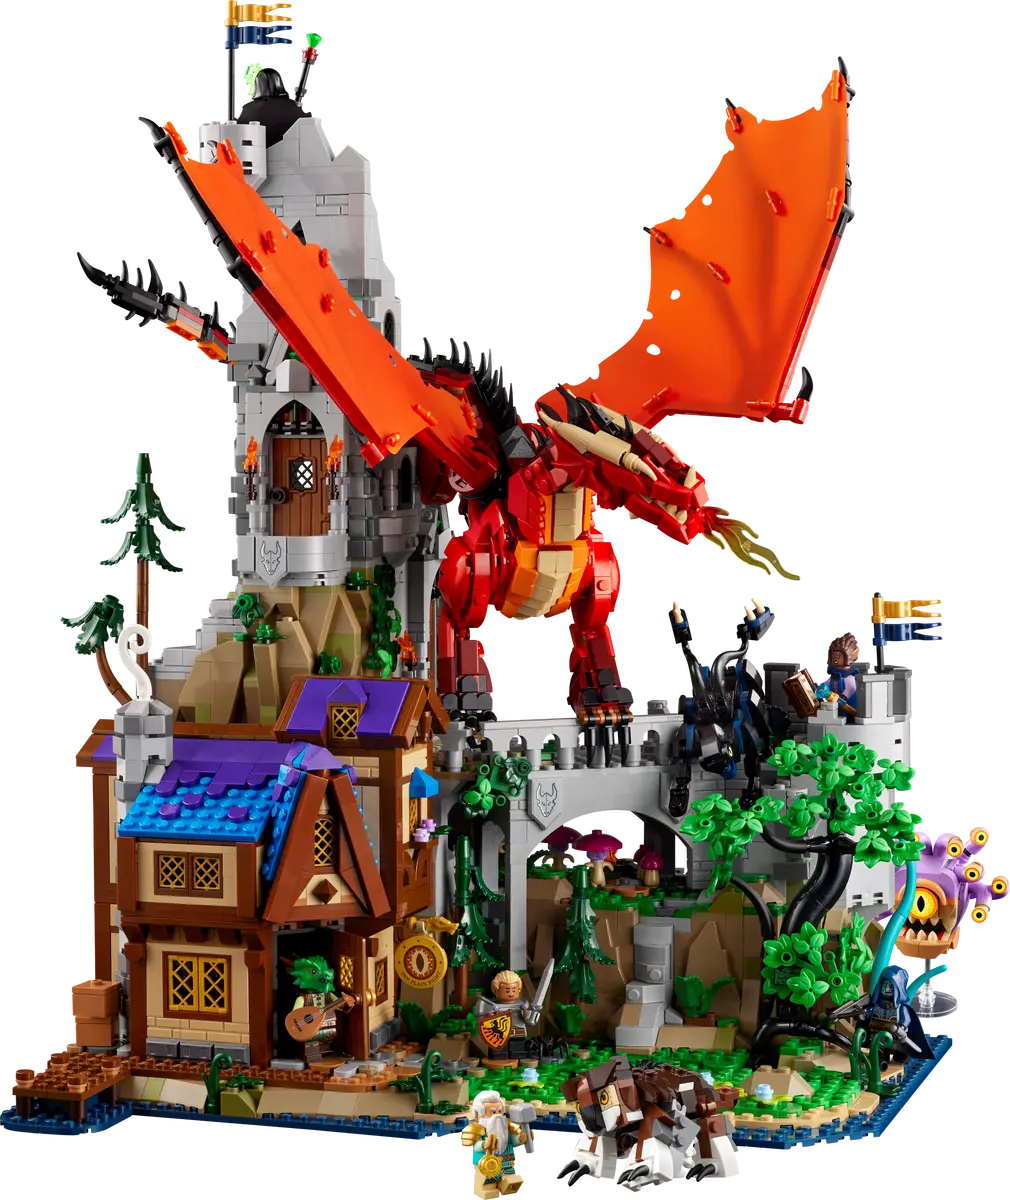 LEGO kondigt gigantische Dungeons & Dragons-set aan met Nederlands tintje